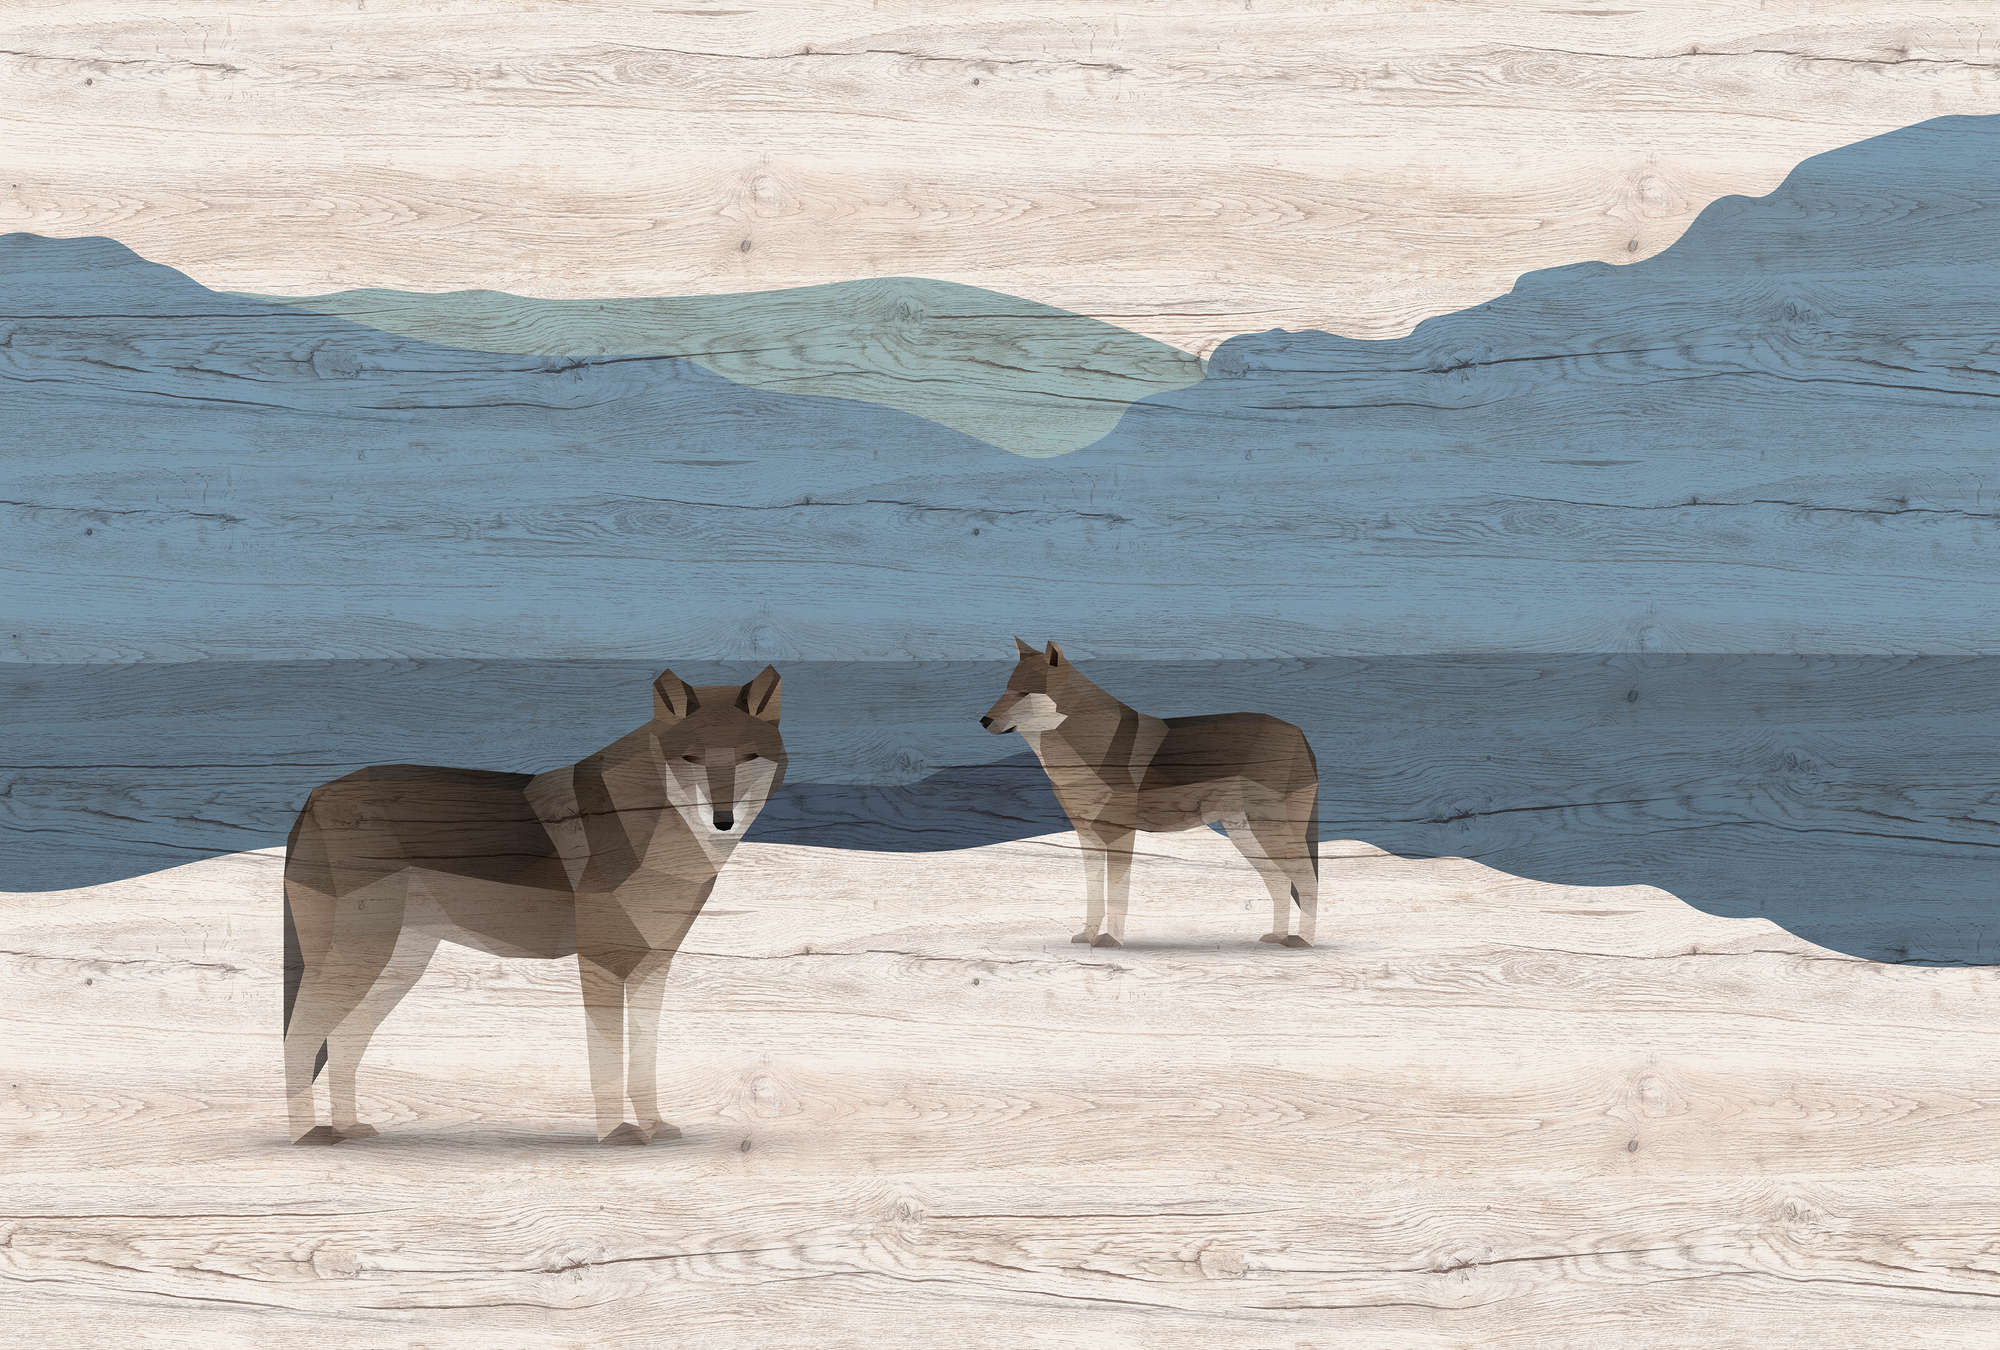             Yukon 1 - Fotomural Montañas y perros con textura de madera
        